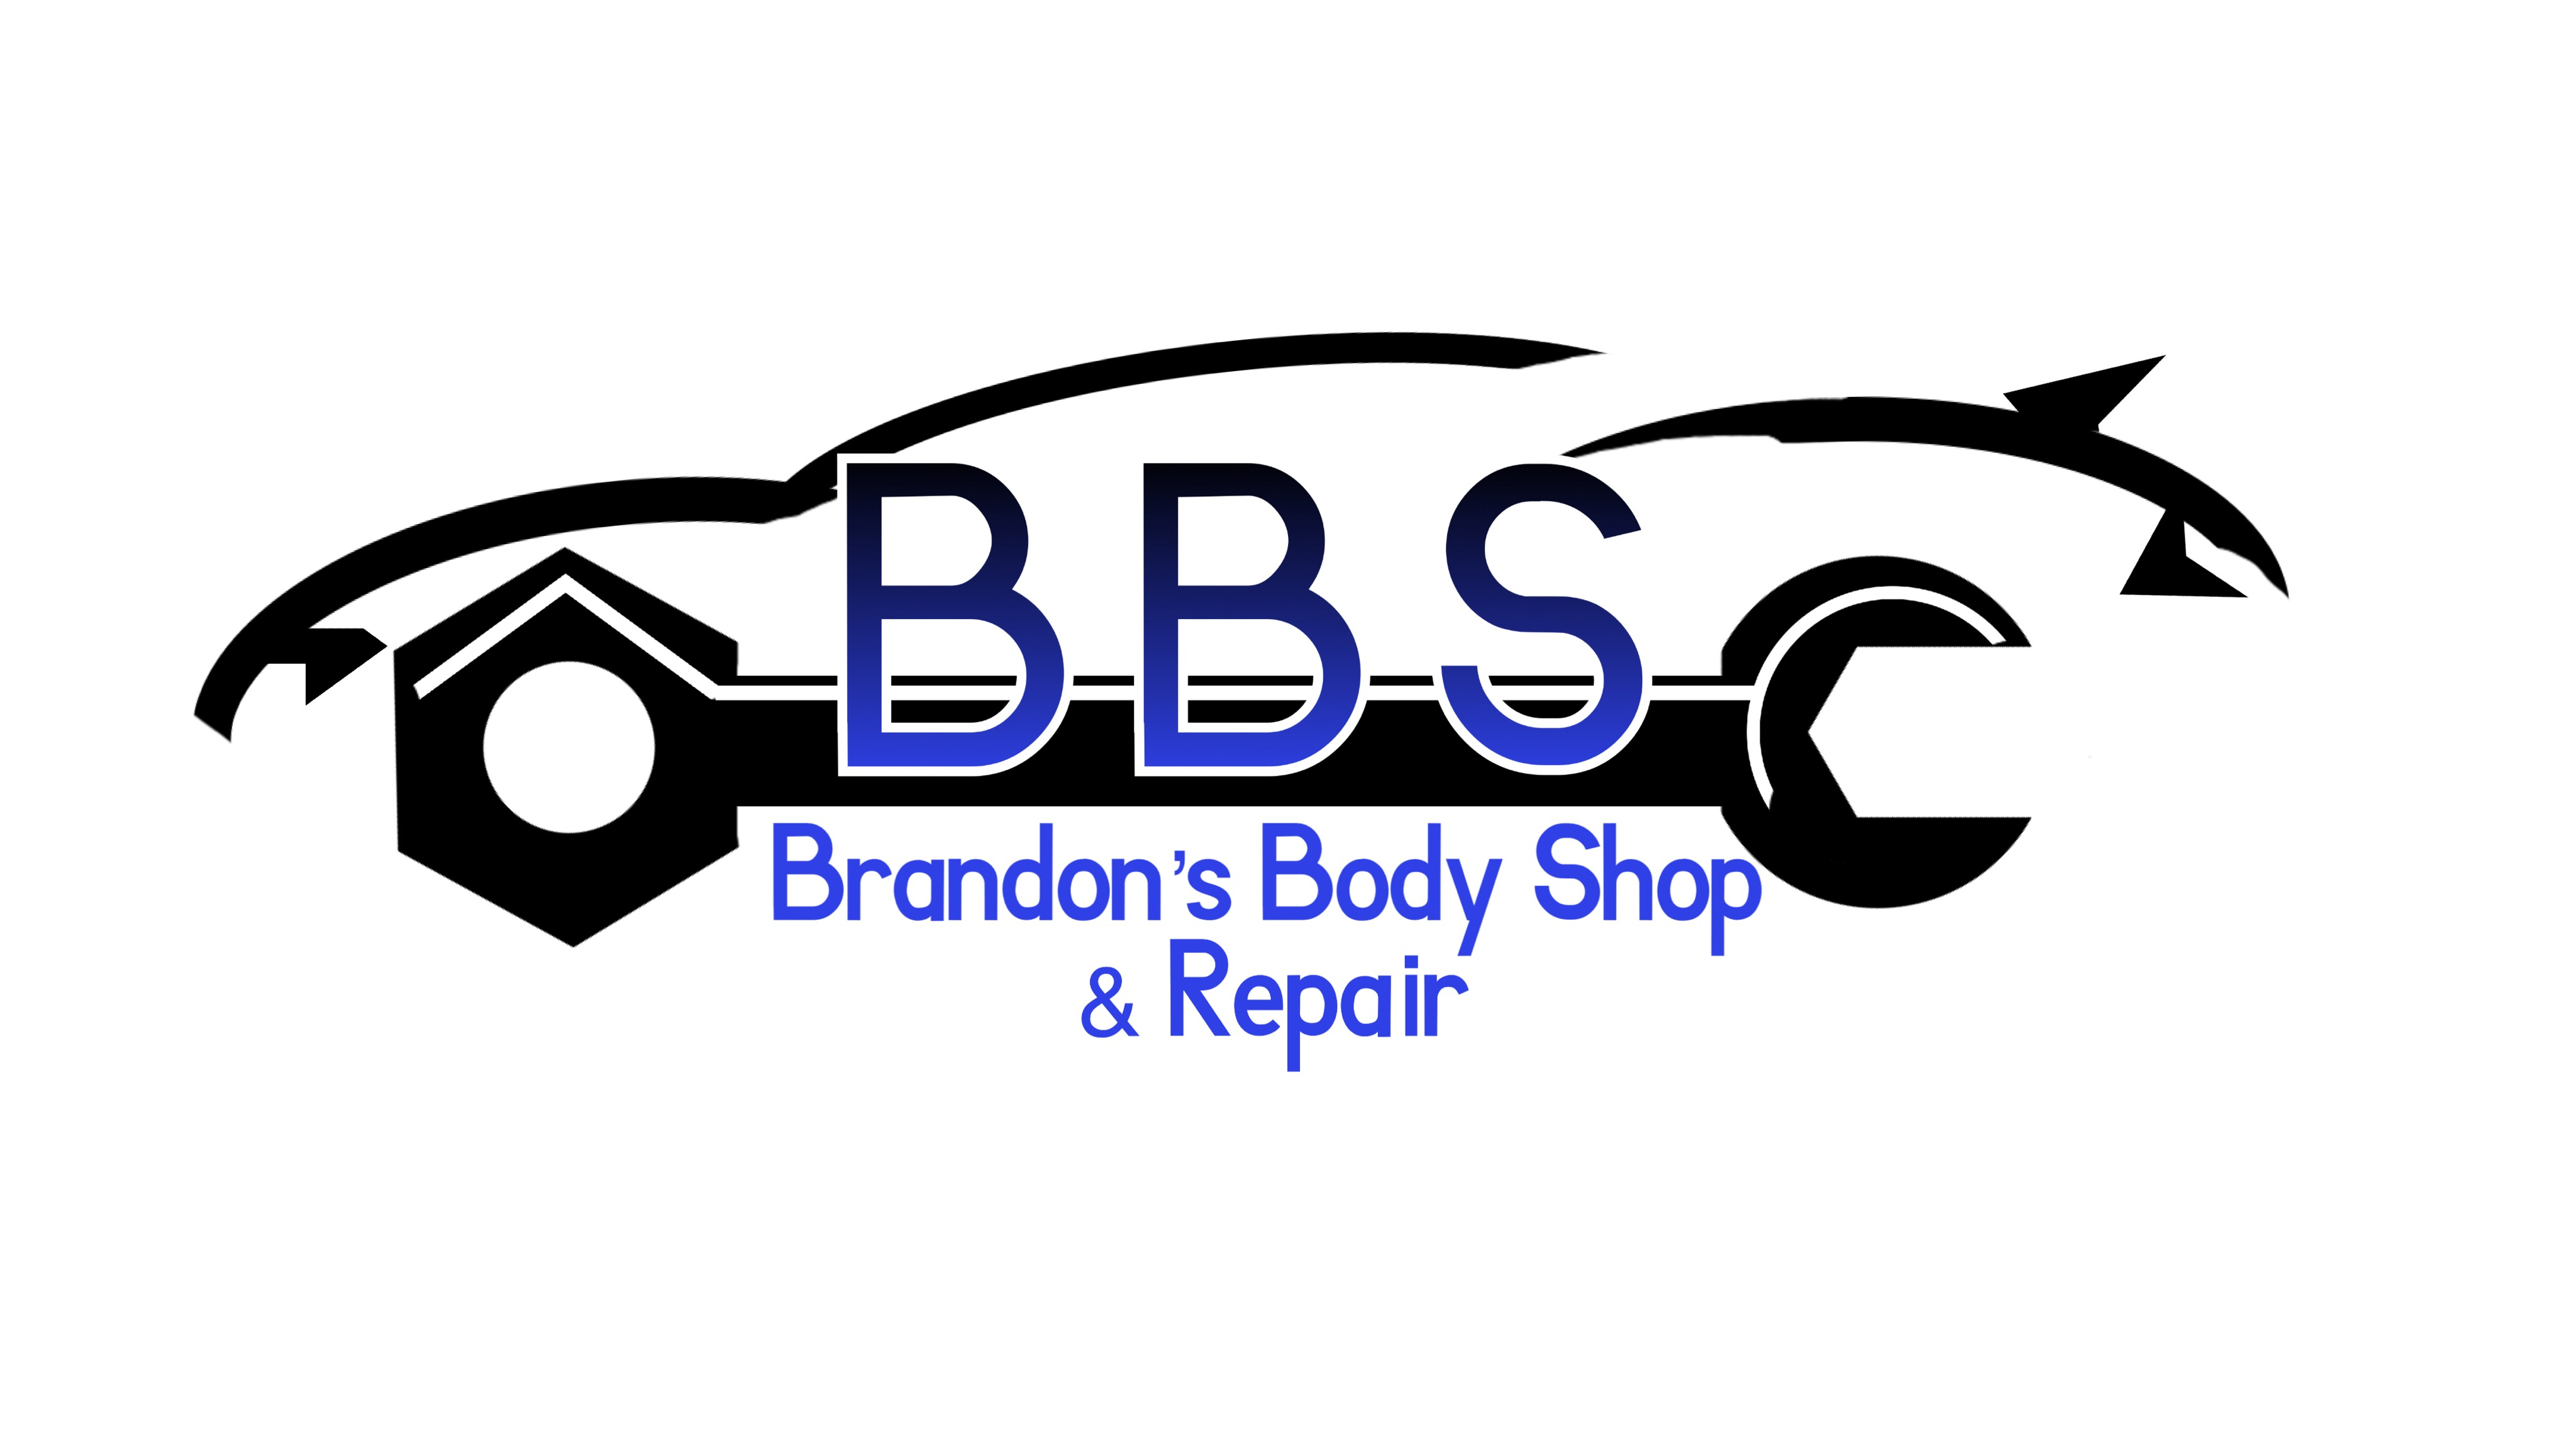 Brandon's Body Shop & Repair